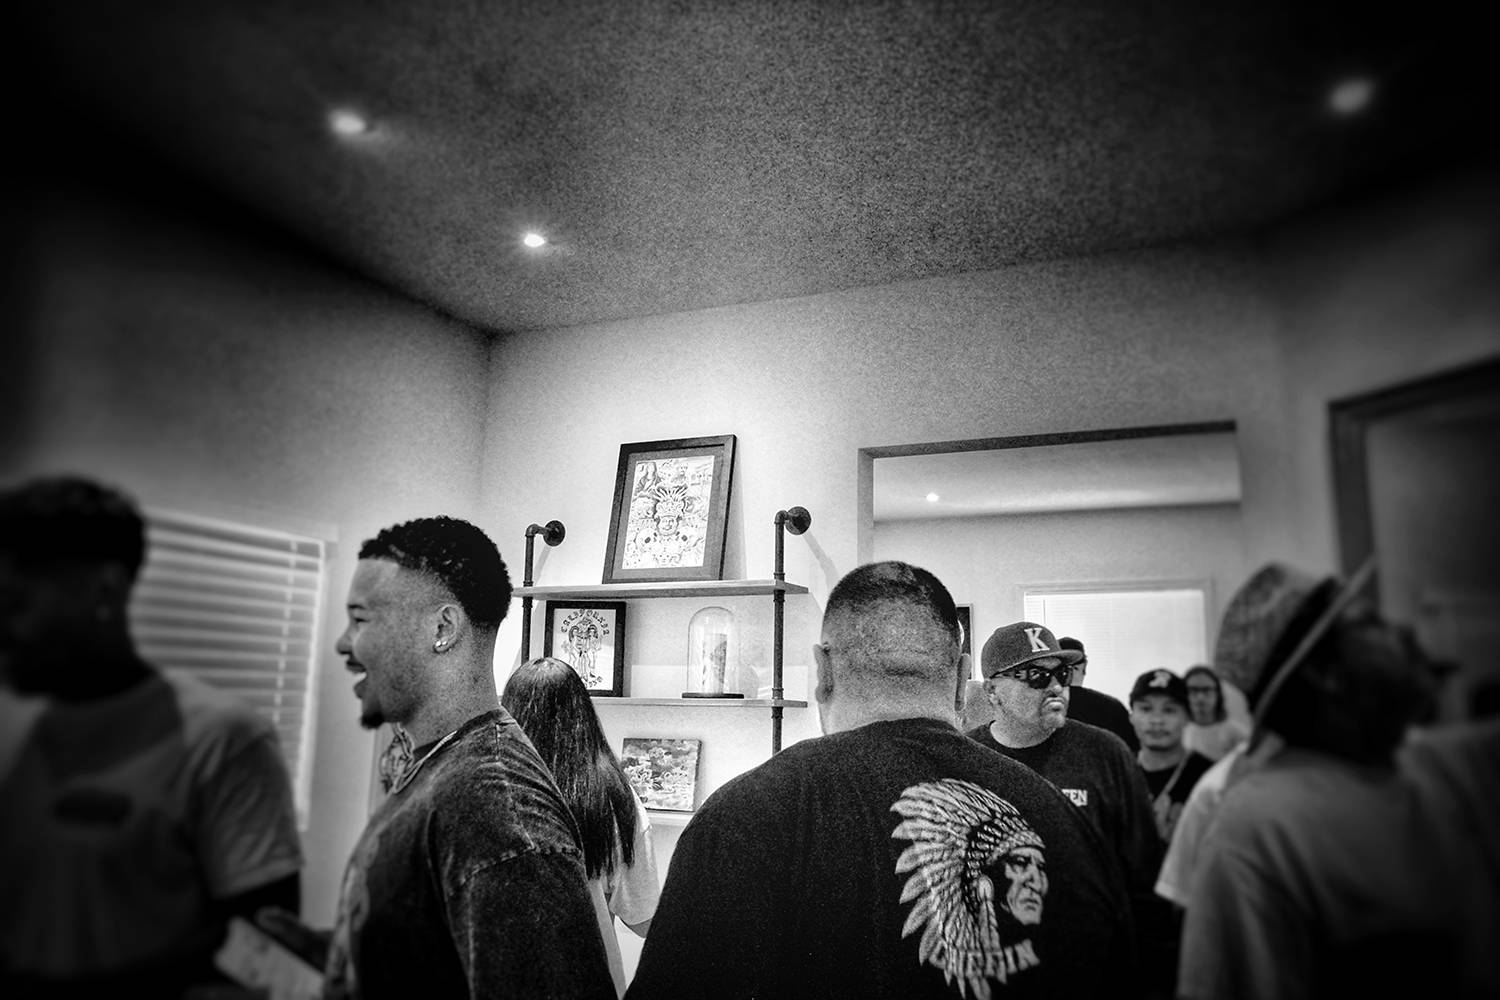 Spectators at the art show at secret sidewalk tattoos